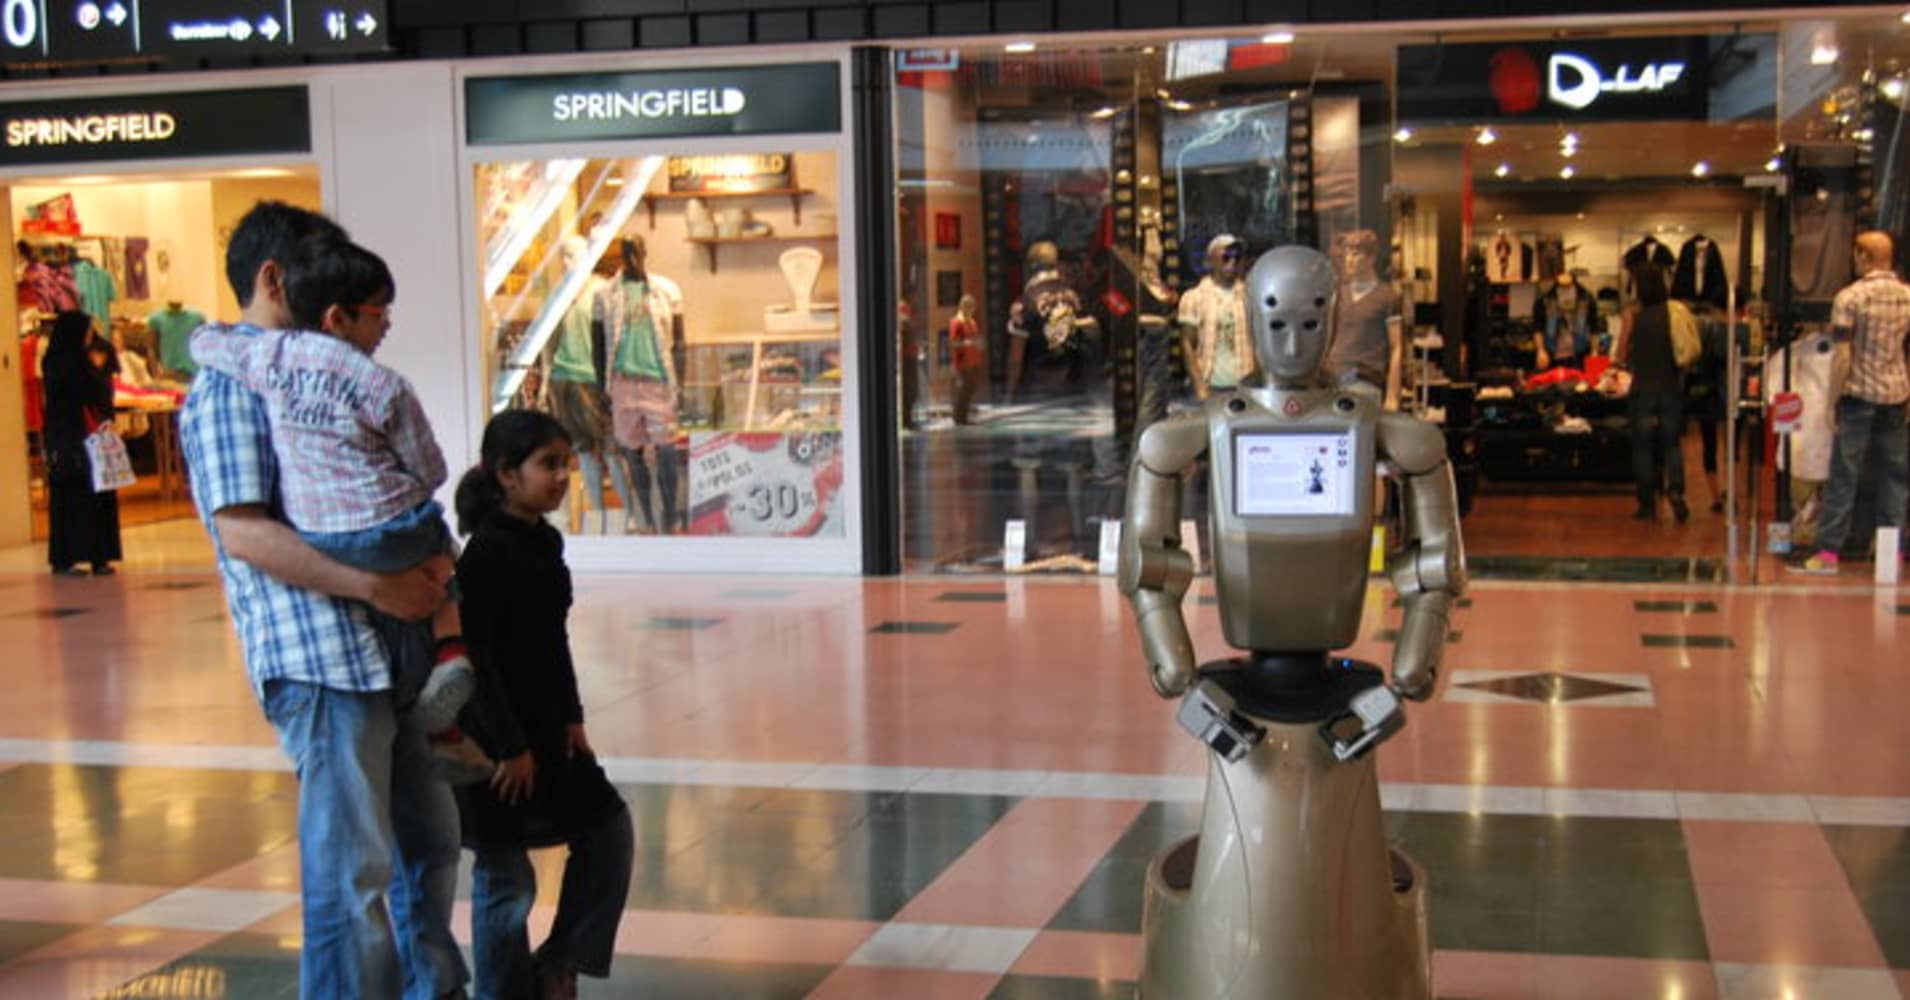 Робот Молл. Робот магазина Power. Boilerplate робот. Робот и шопинг картинки. М5 молл роботы